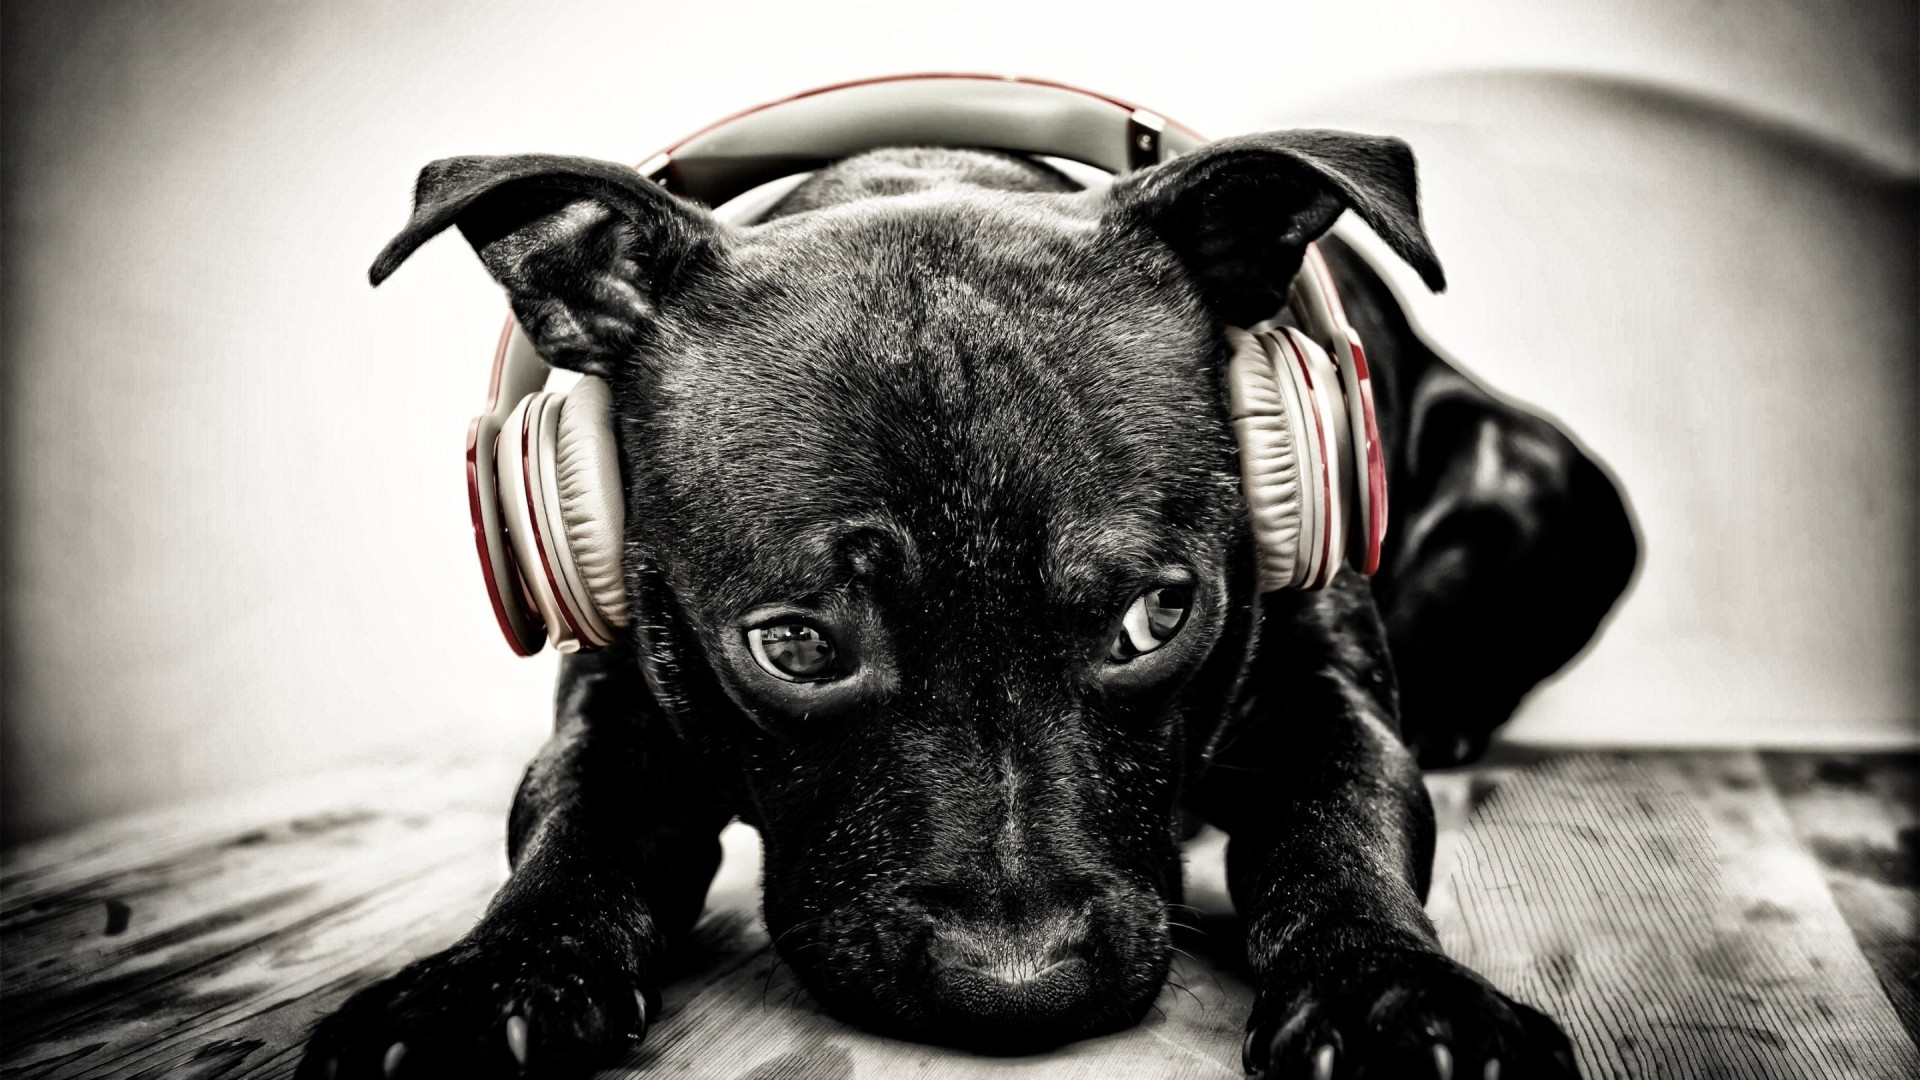 Puppy with beats headphones wallpaper 1920x1080